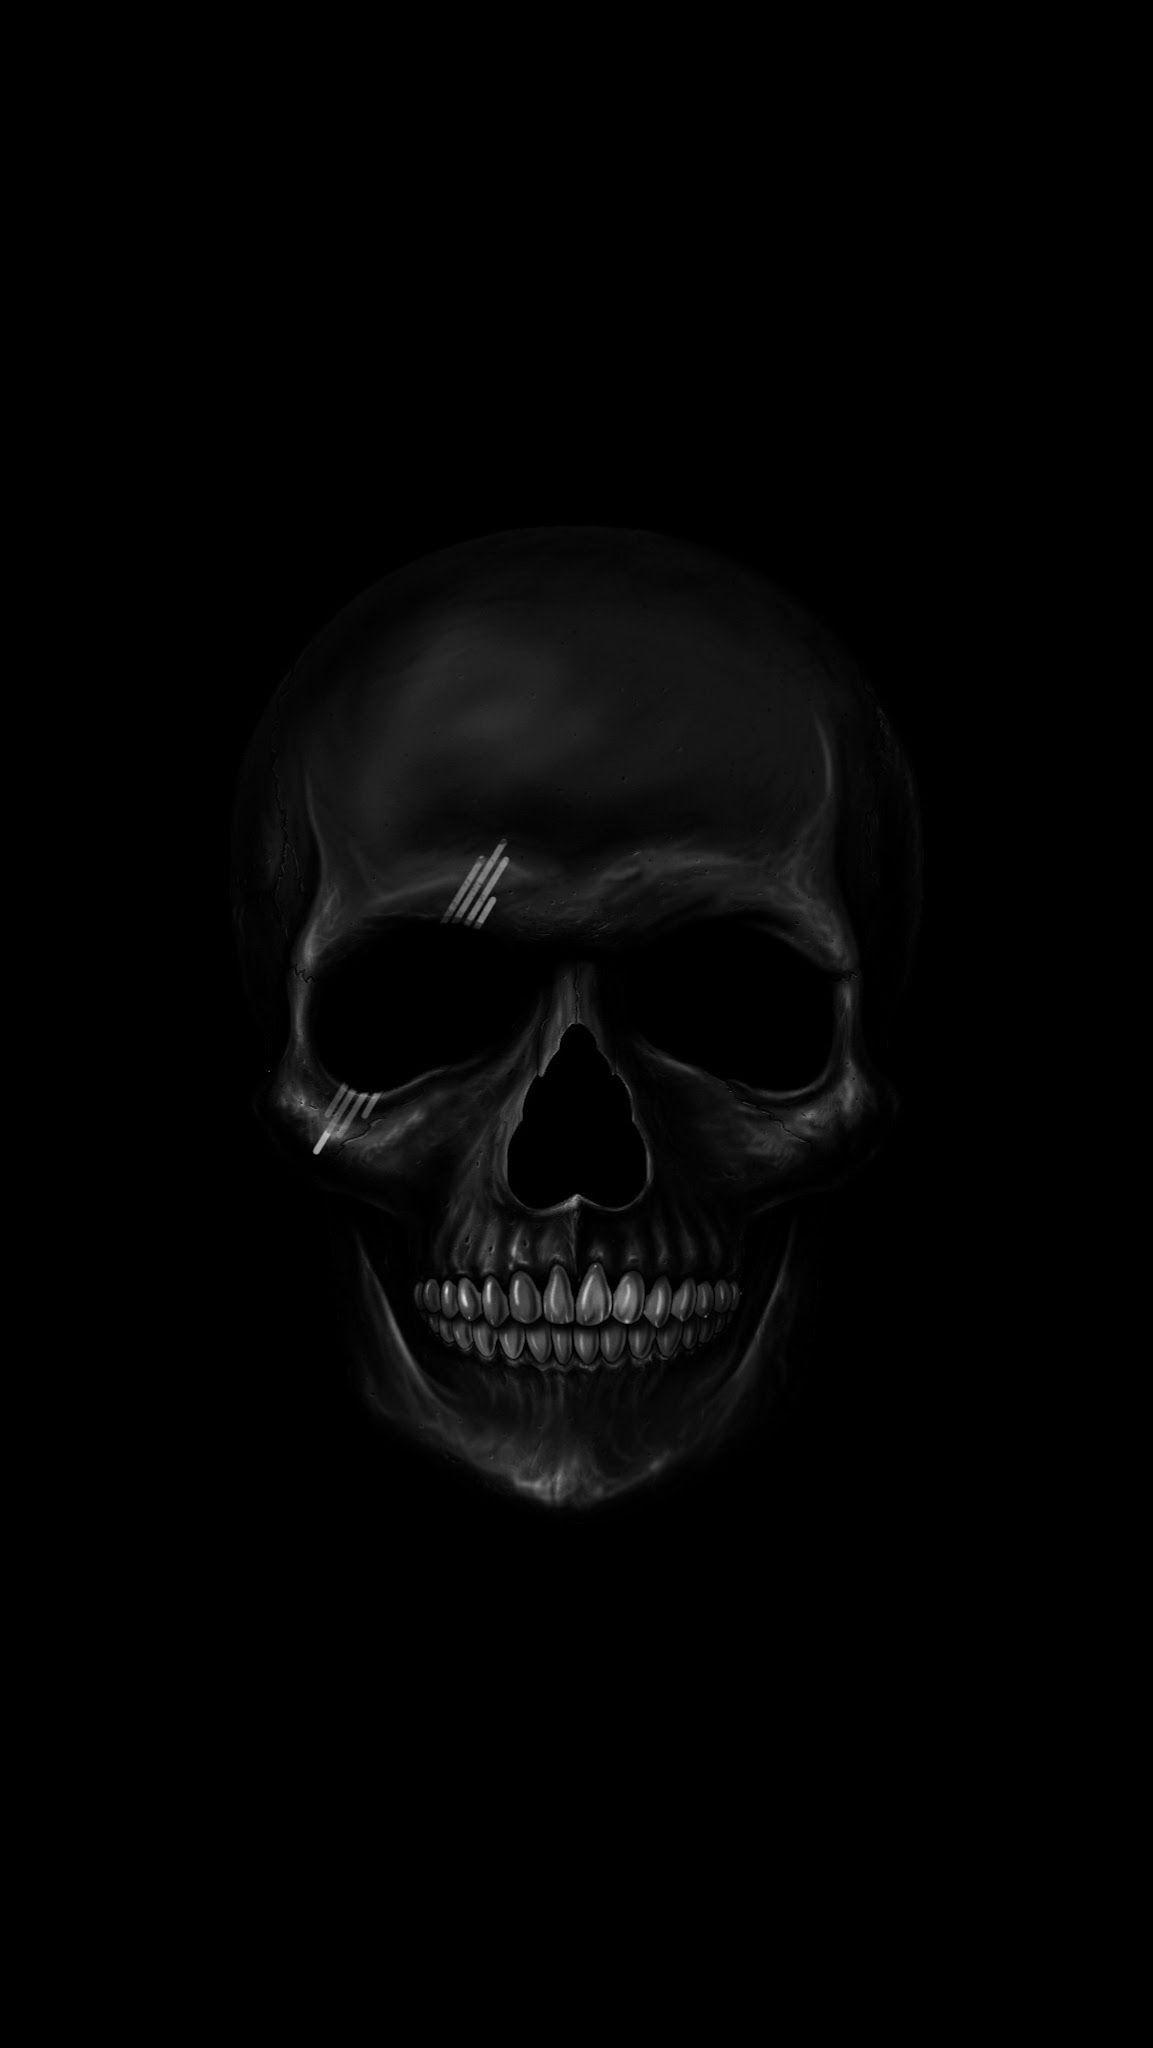 AMOLED Skull Wallpaper. AMOLED Wallpaper. Black